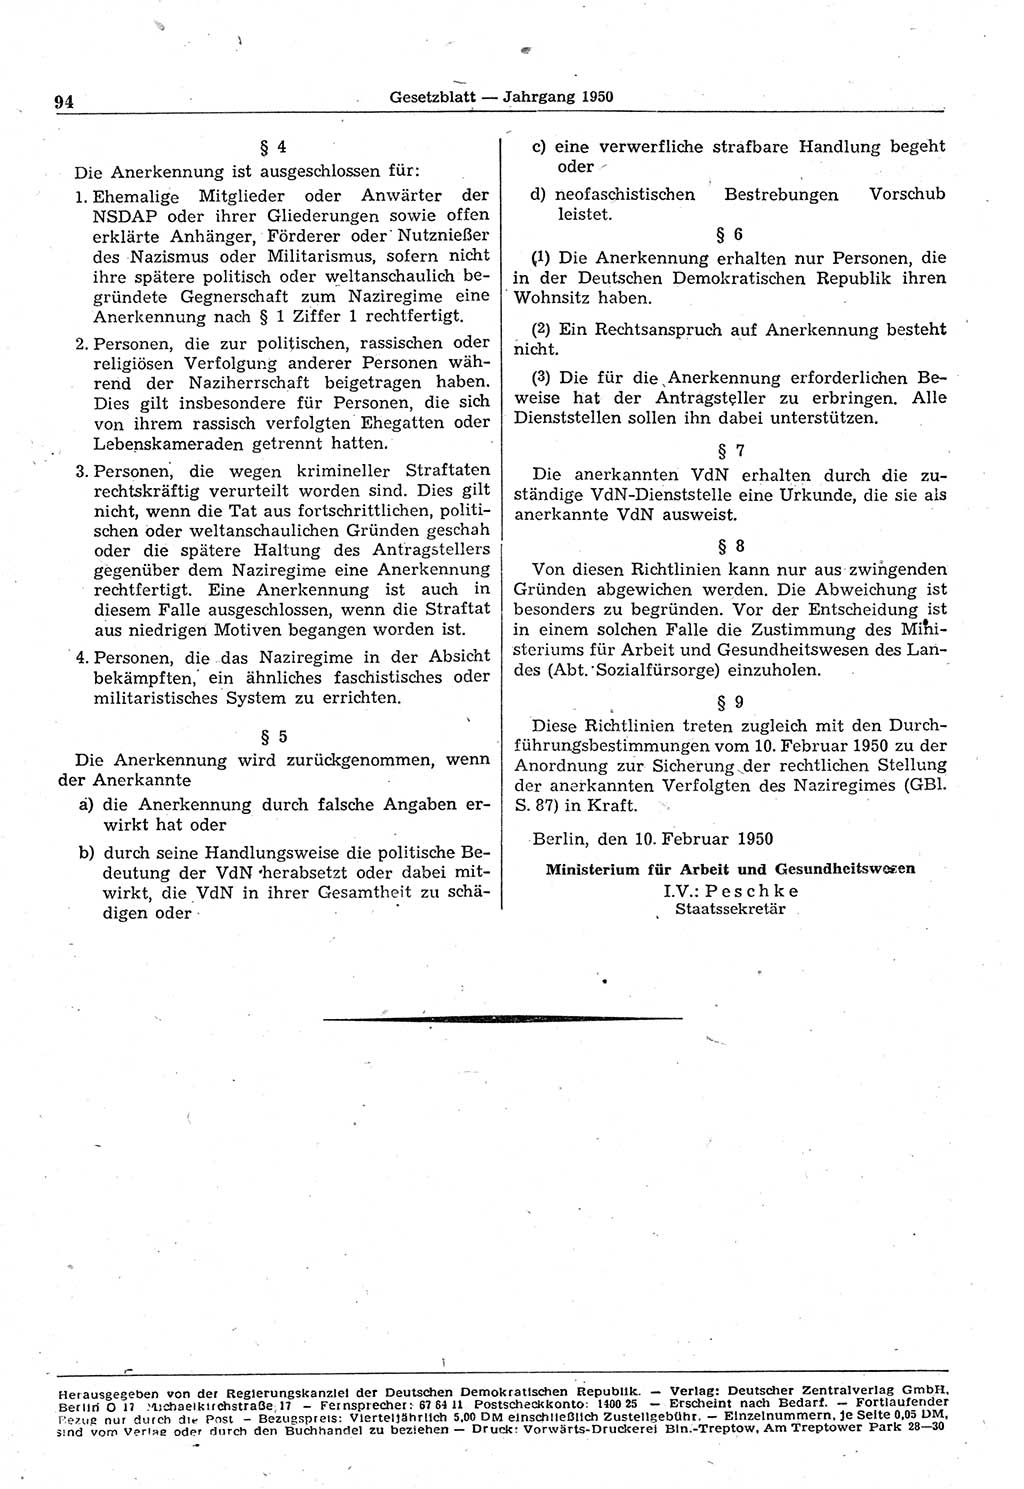 Gesetzblatt (GBl.) der Deutschen Demokratischen Republik (DDR) 1950, Seite 94 (GBl. DDR 1950, S. 94)